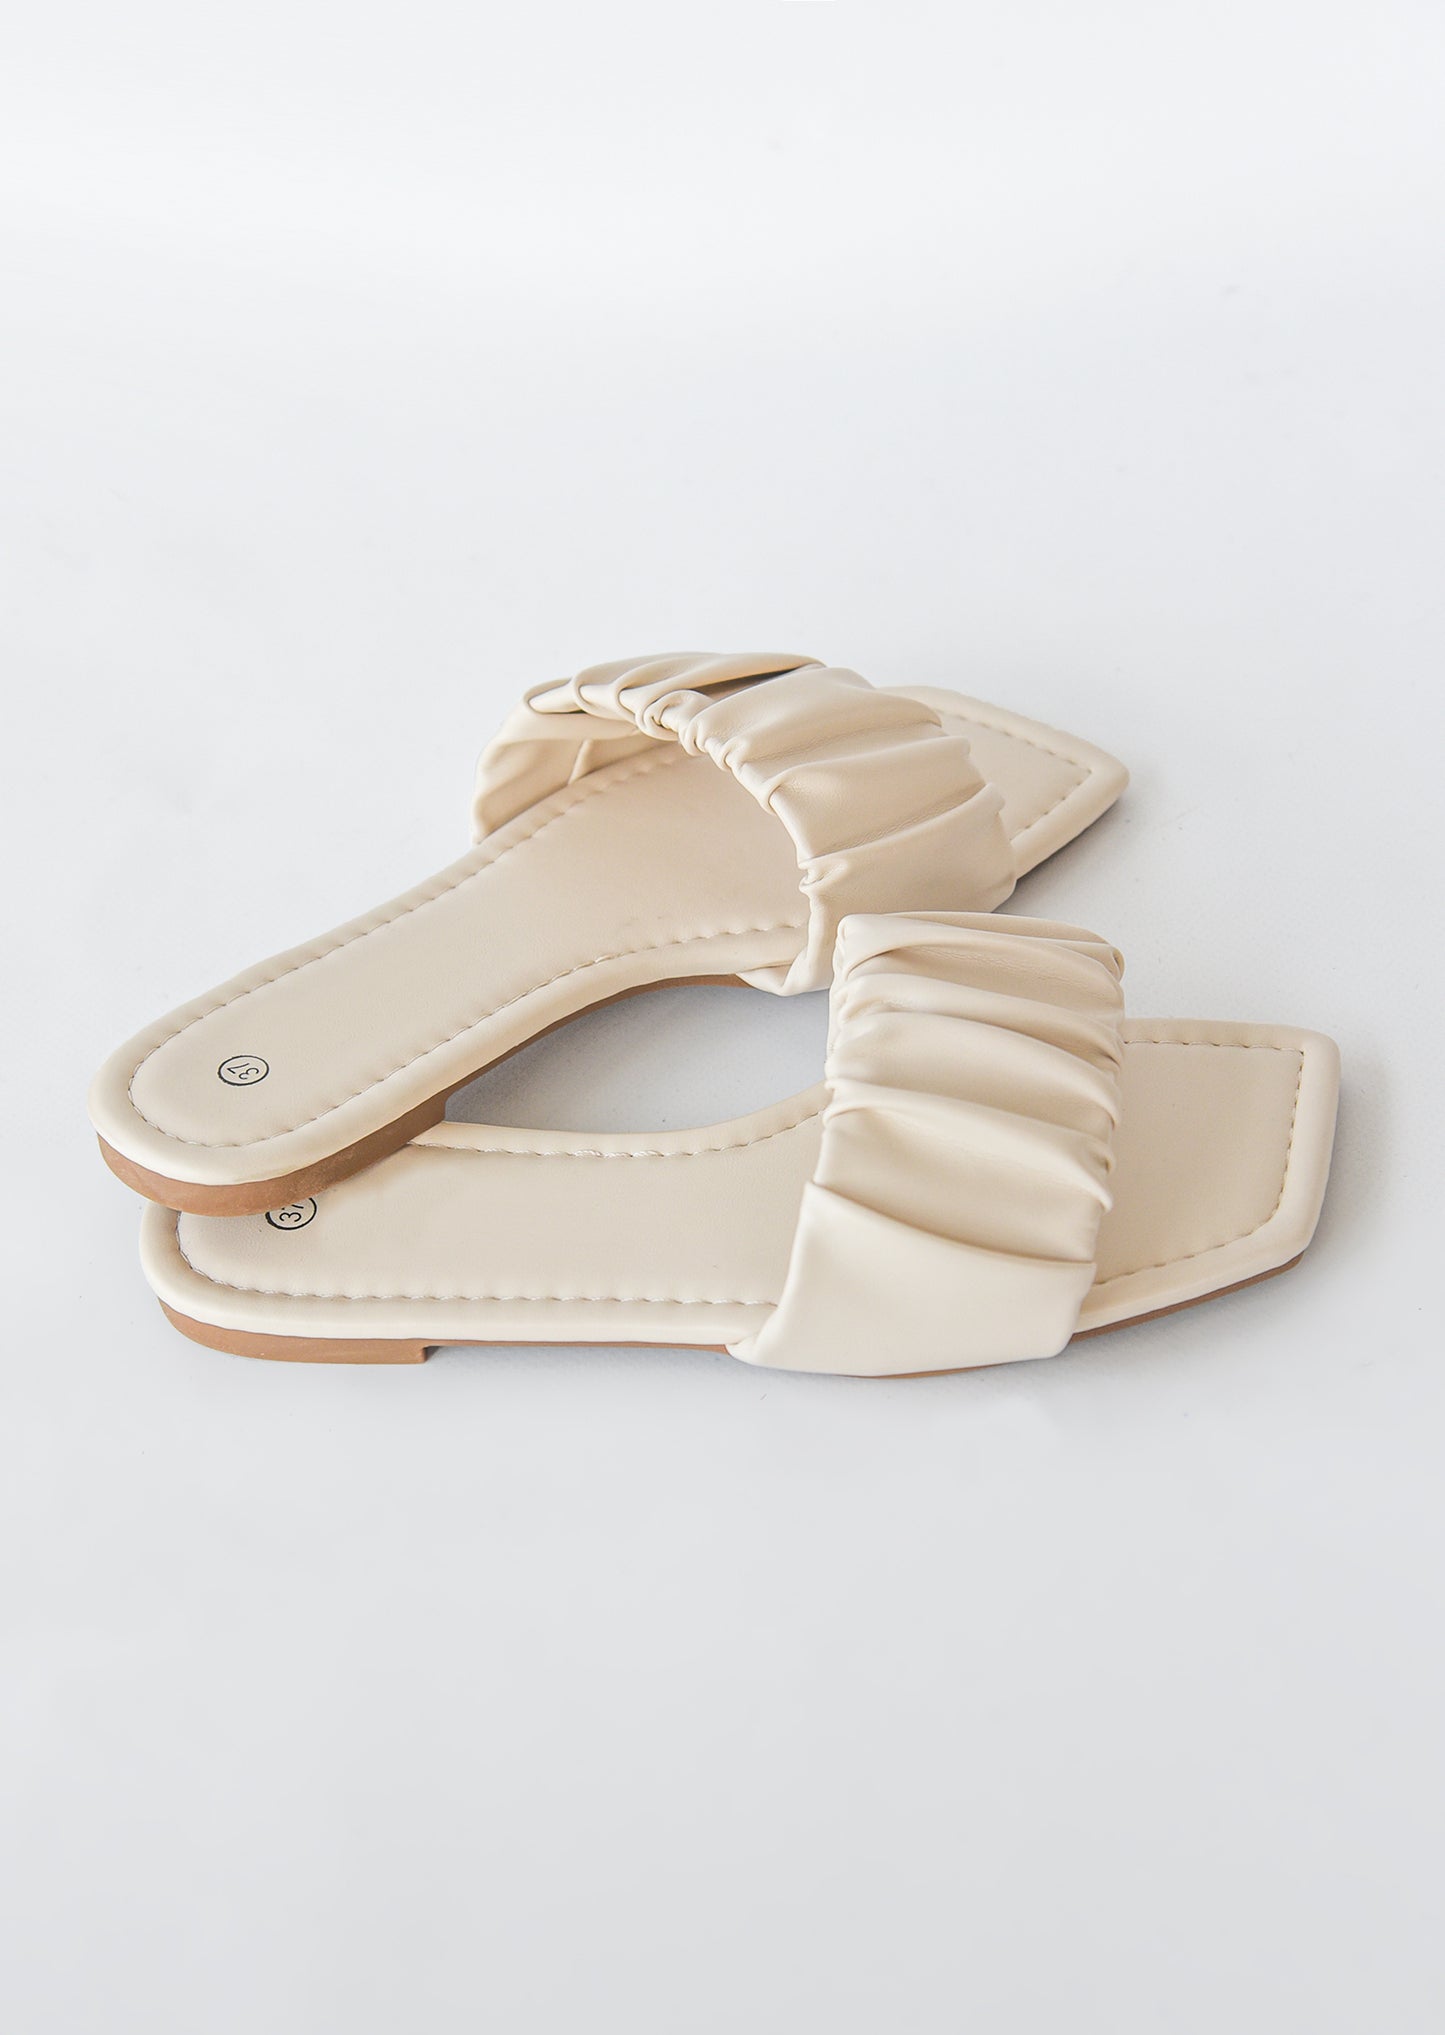 Sandalias planas con diseño fruncido y puntera cuadrada en beis